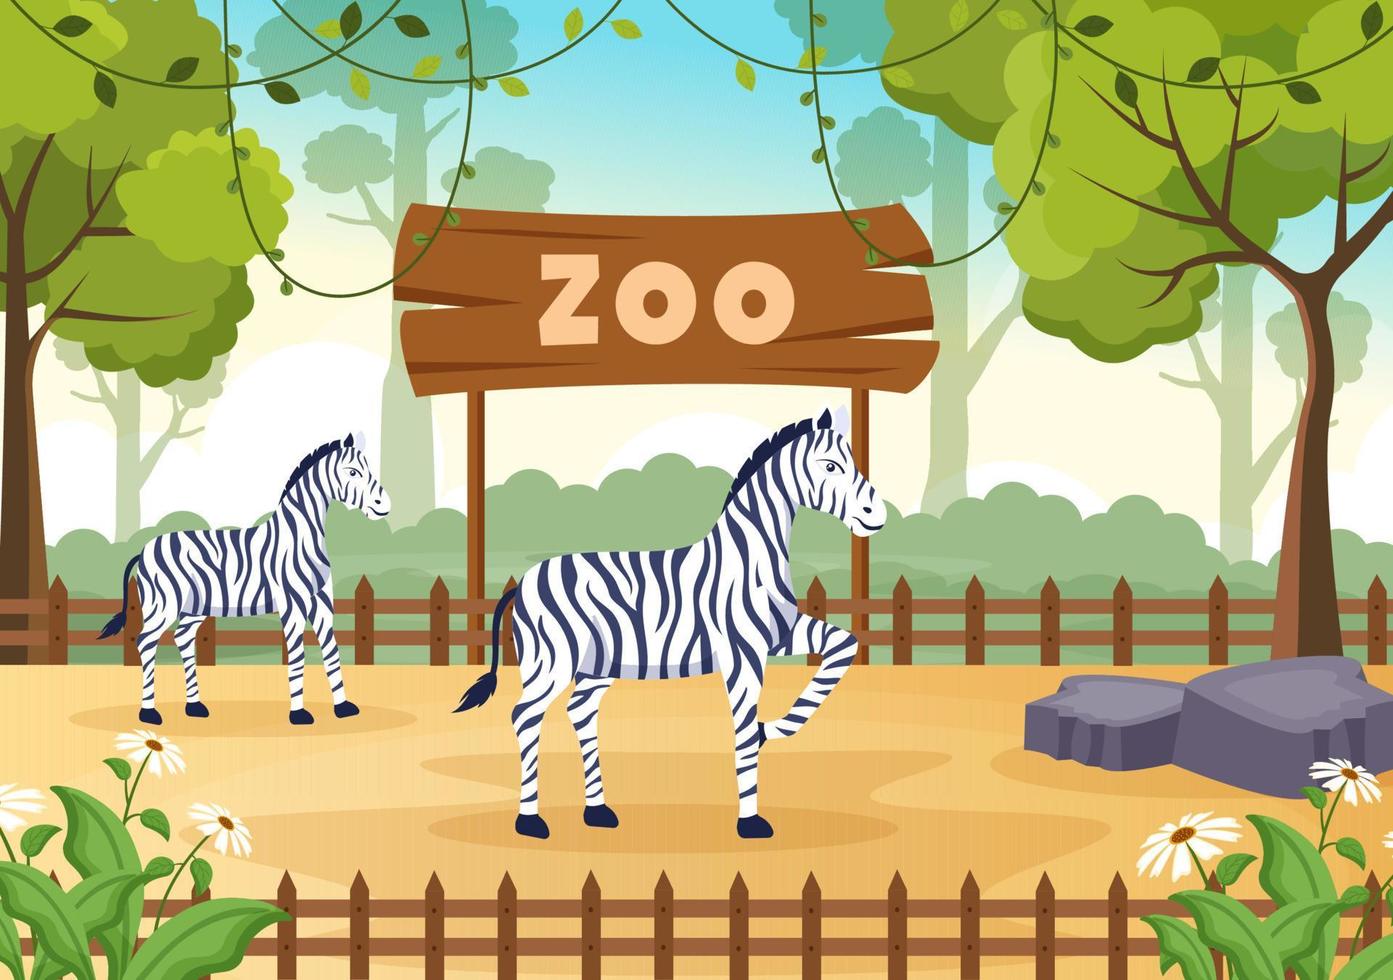 zookarikaturillustration mit safaritieren zebra, käfig und besuchern auf territorium auf waldhintergrunddesign vektor